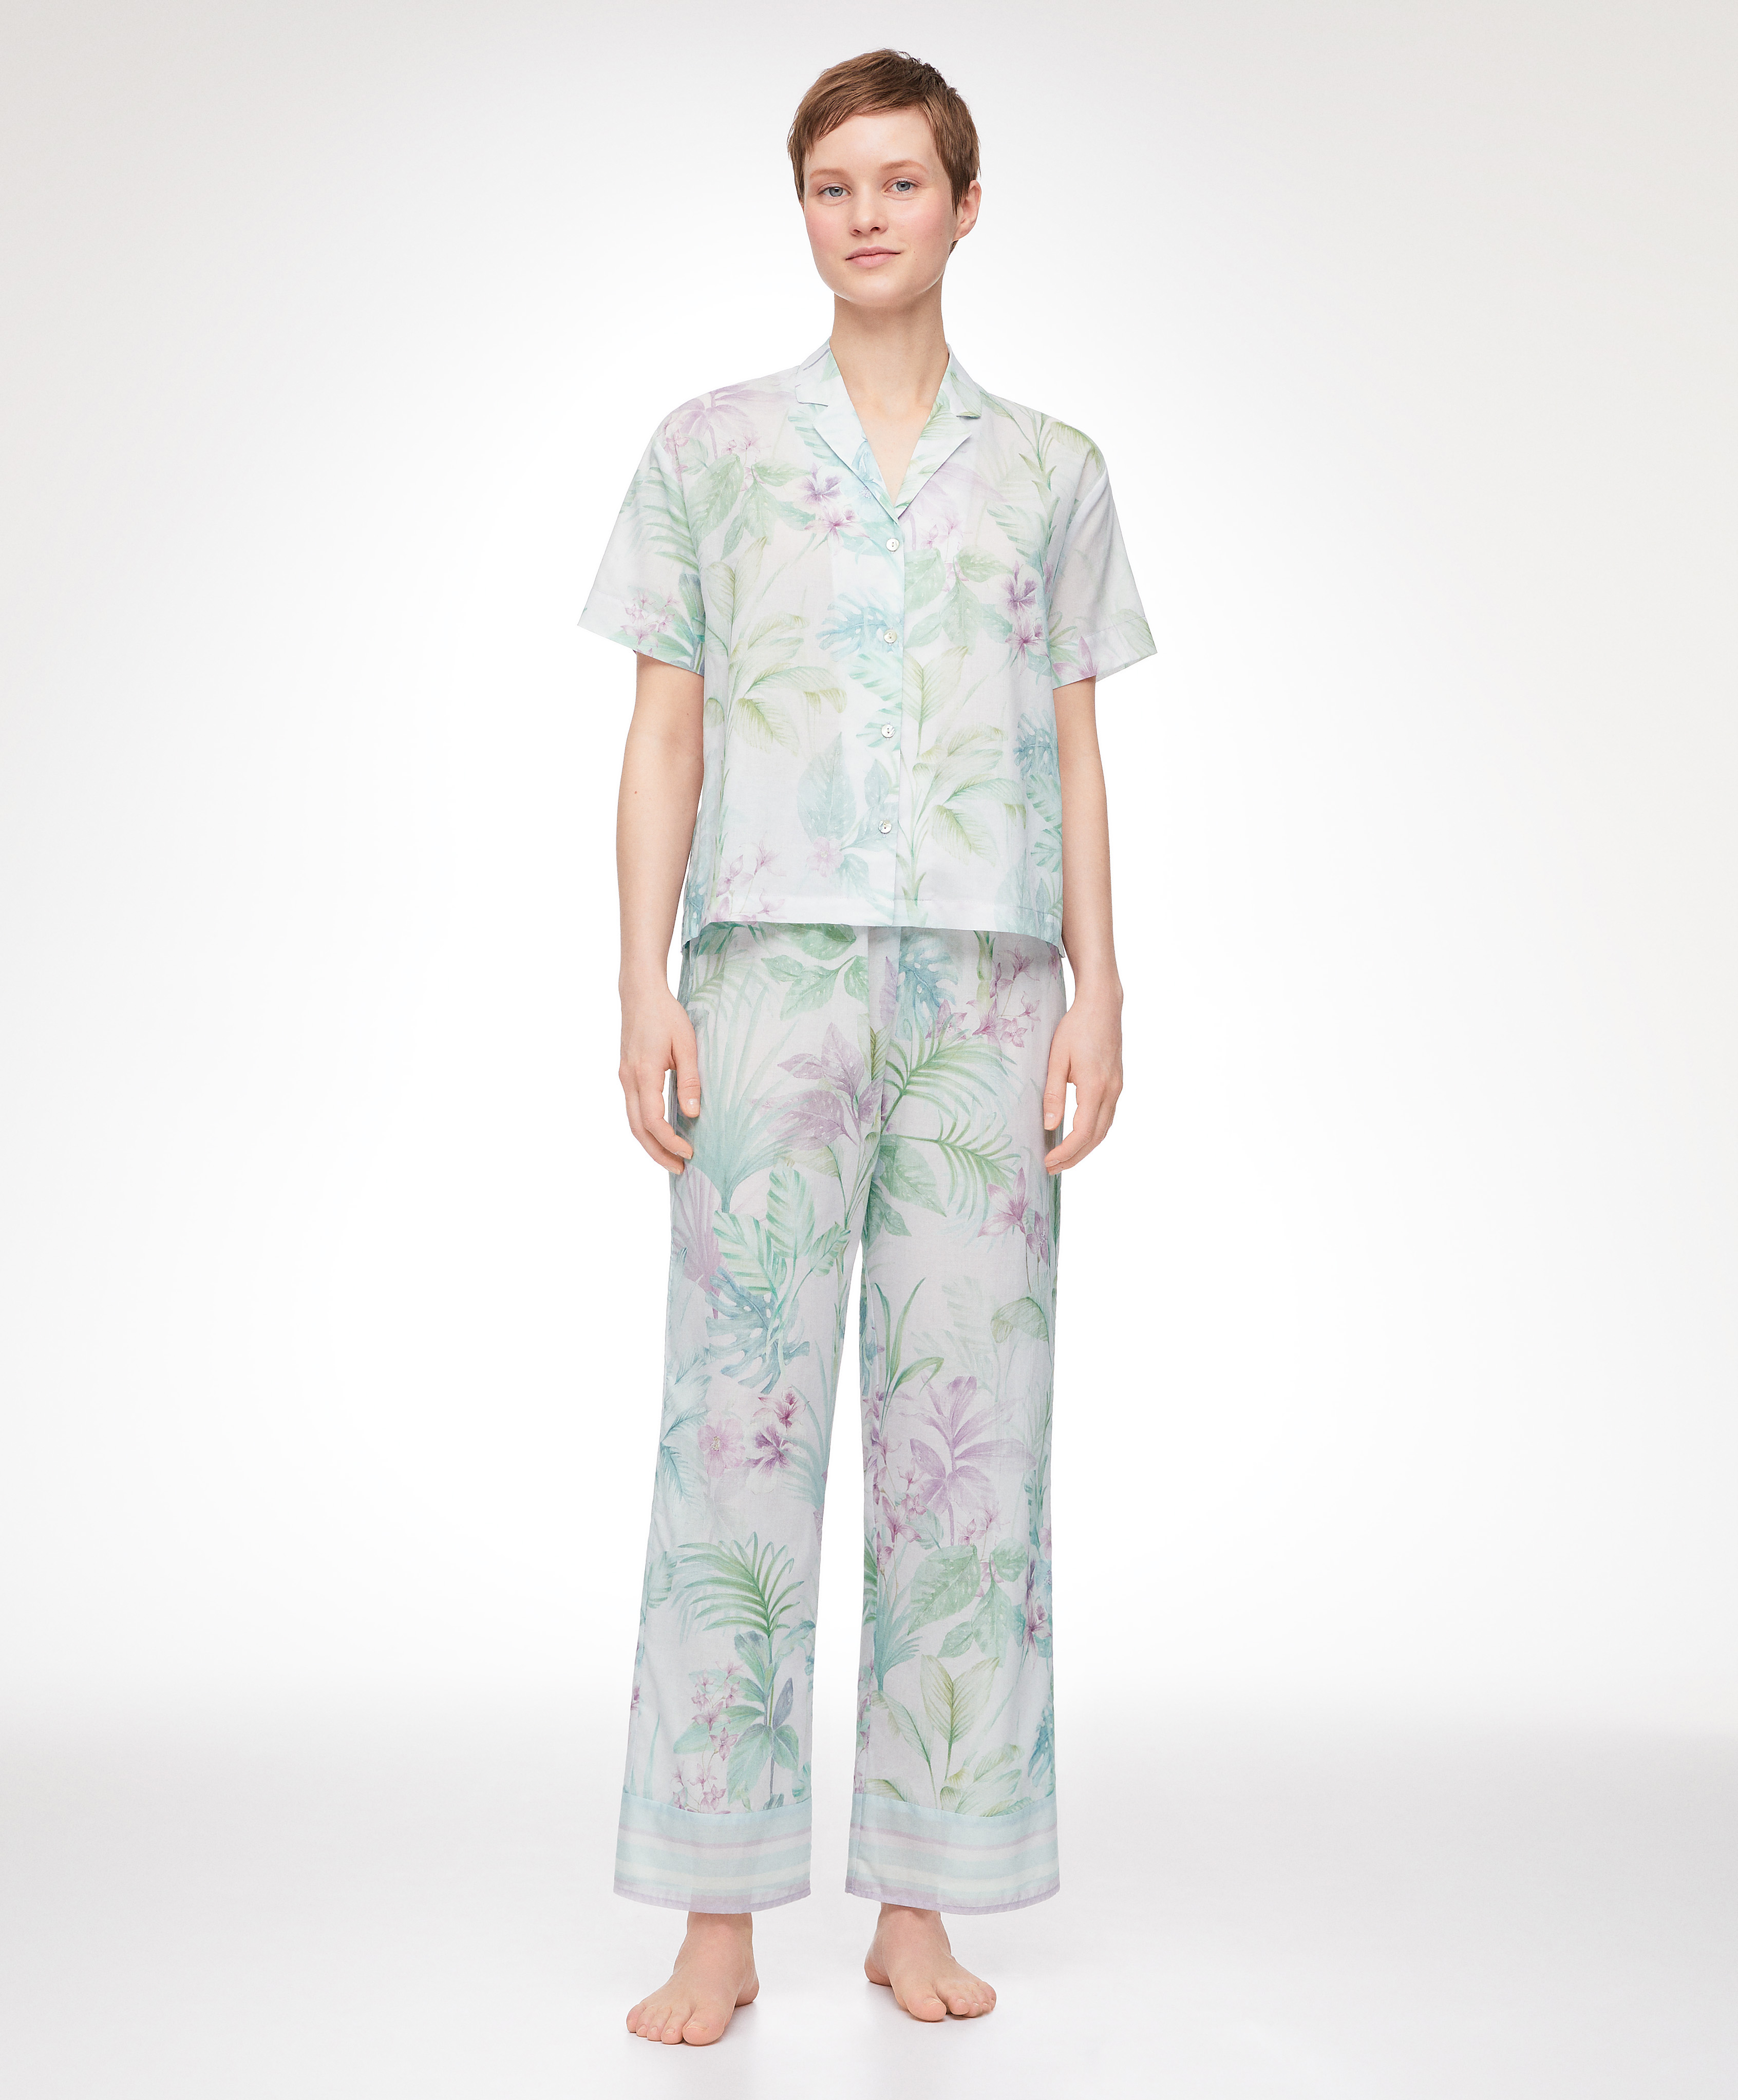 Lange pyjamaset met tropische print